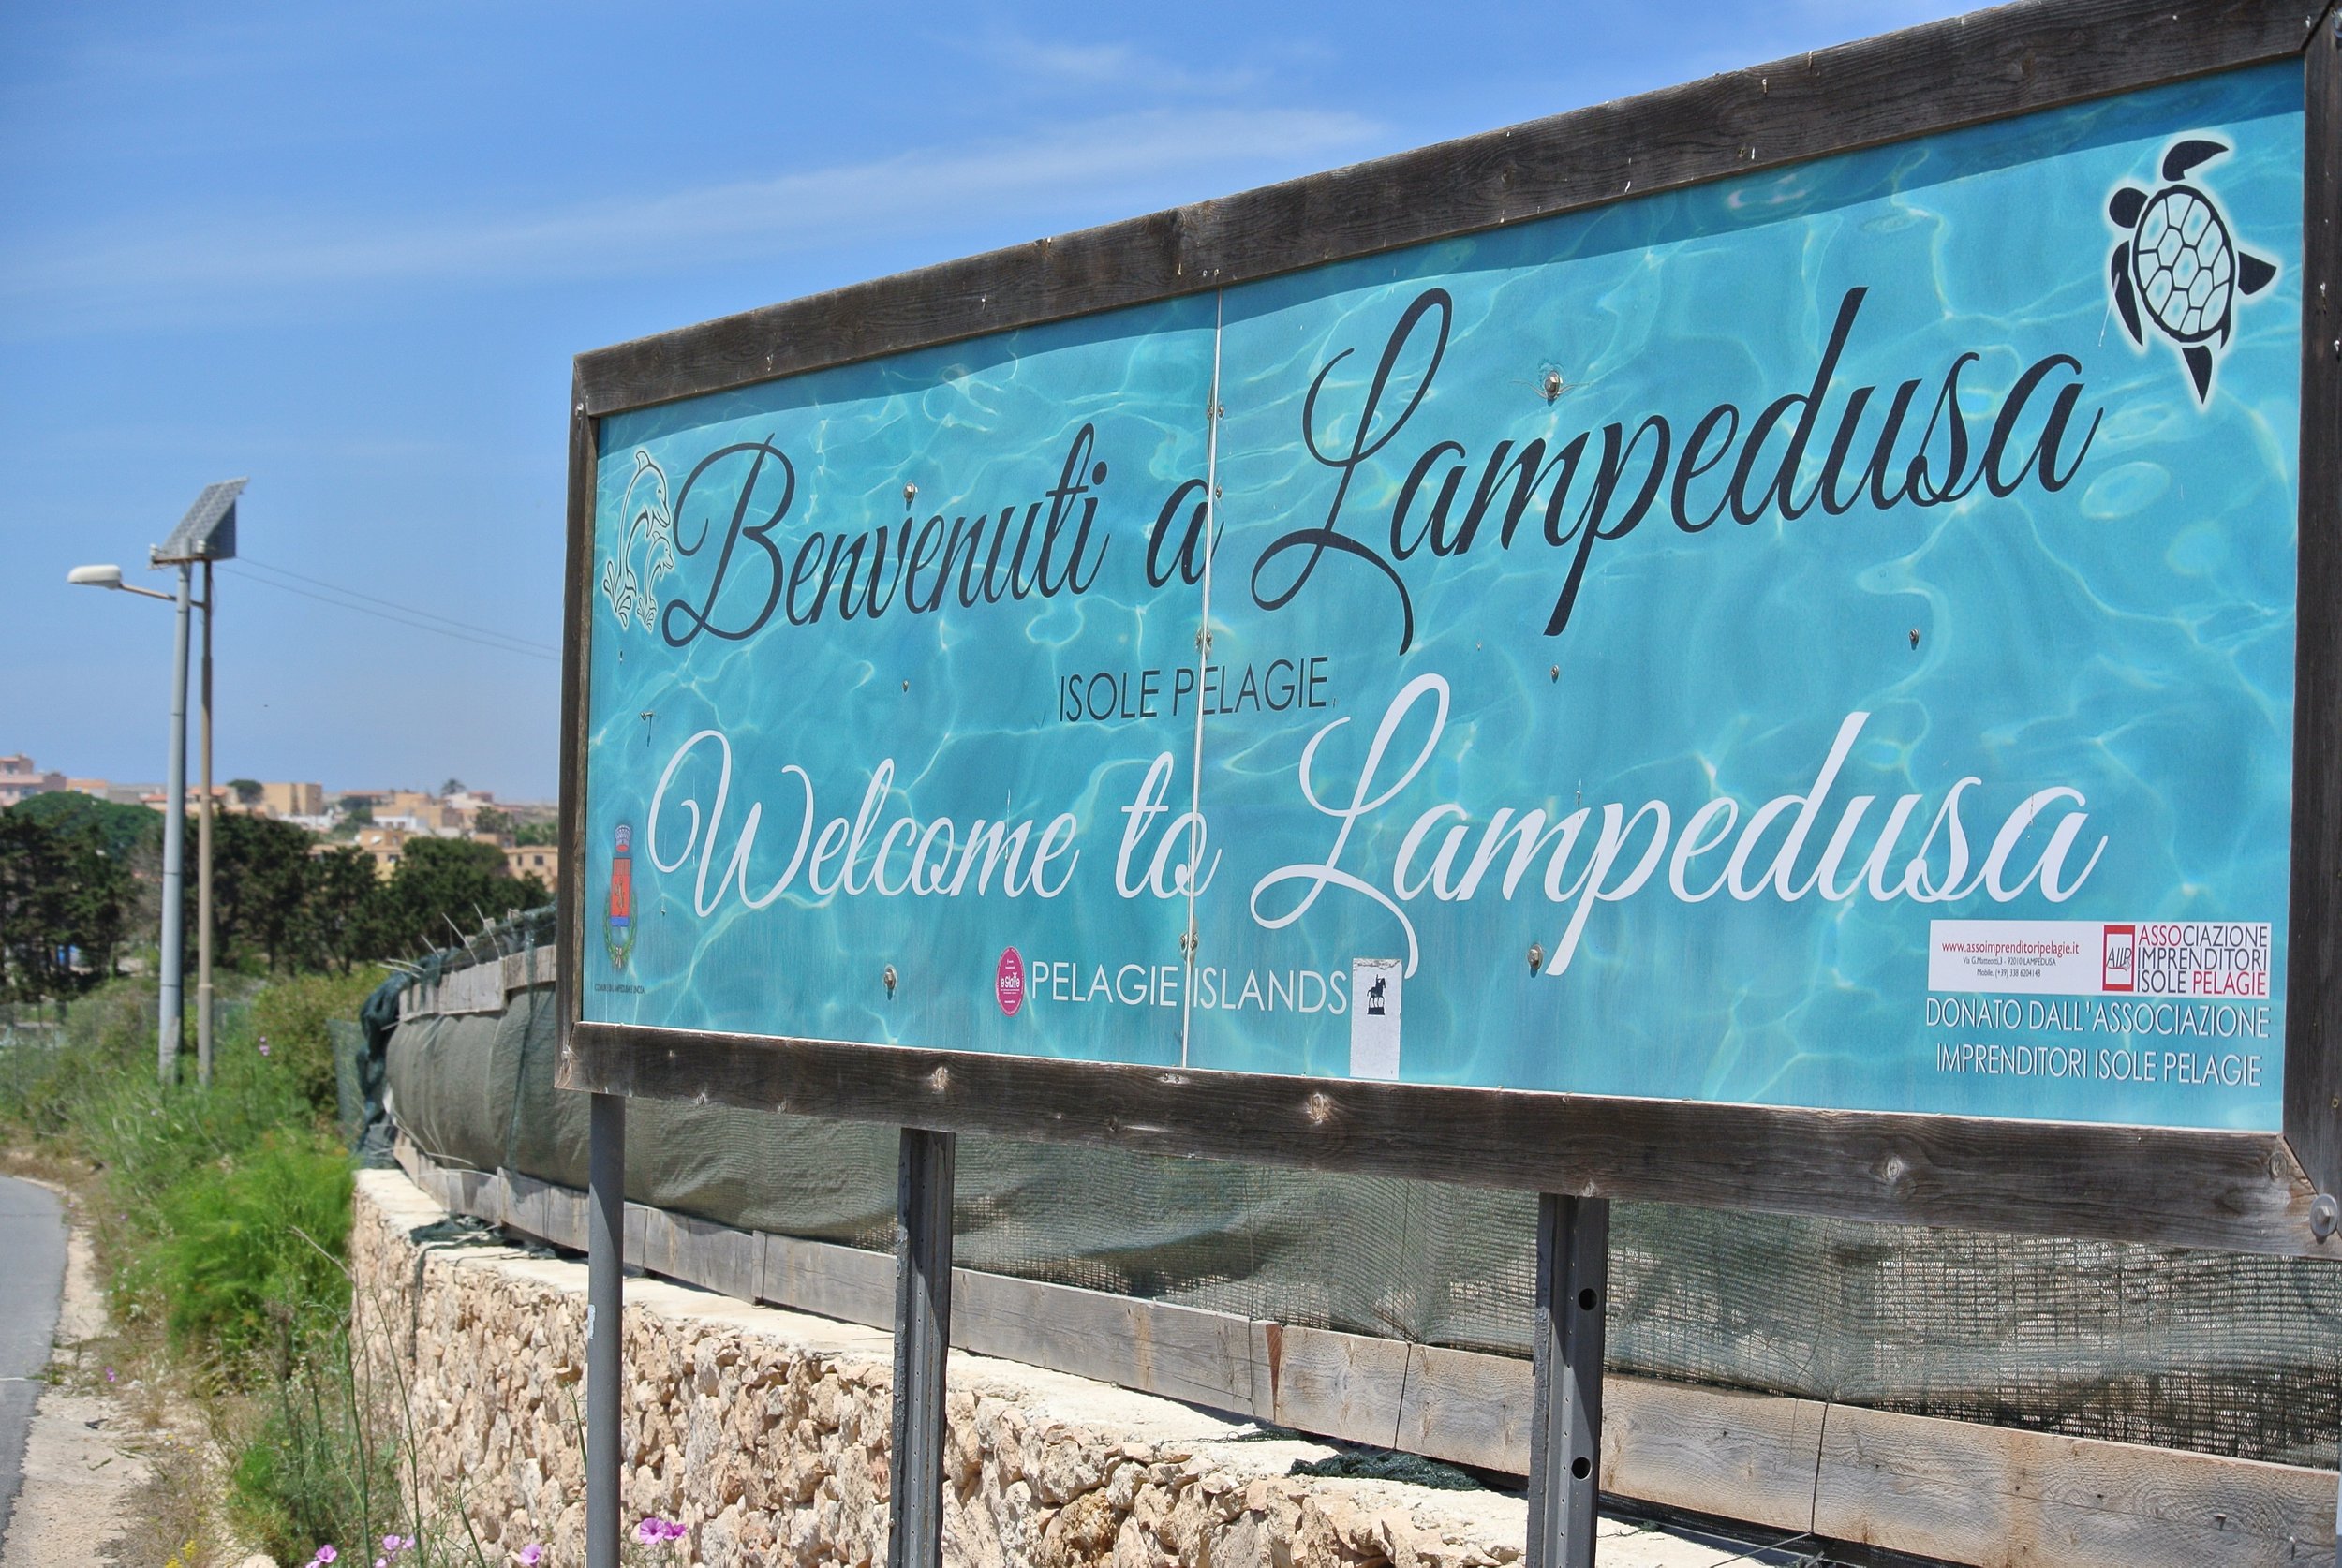   Lampedusa, Italy, Apr-May, 2017.   ©Pamela Kerpius/Migrants of the Mediterranean  